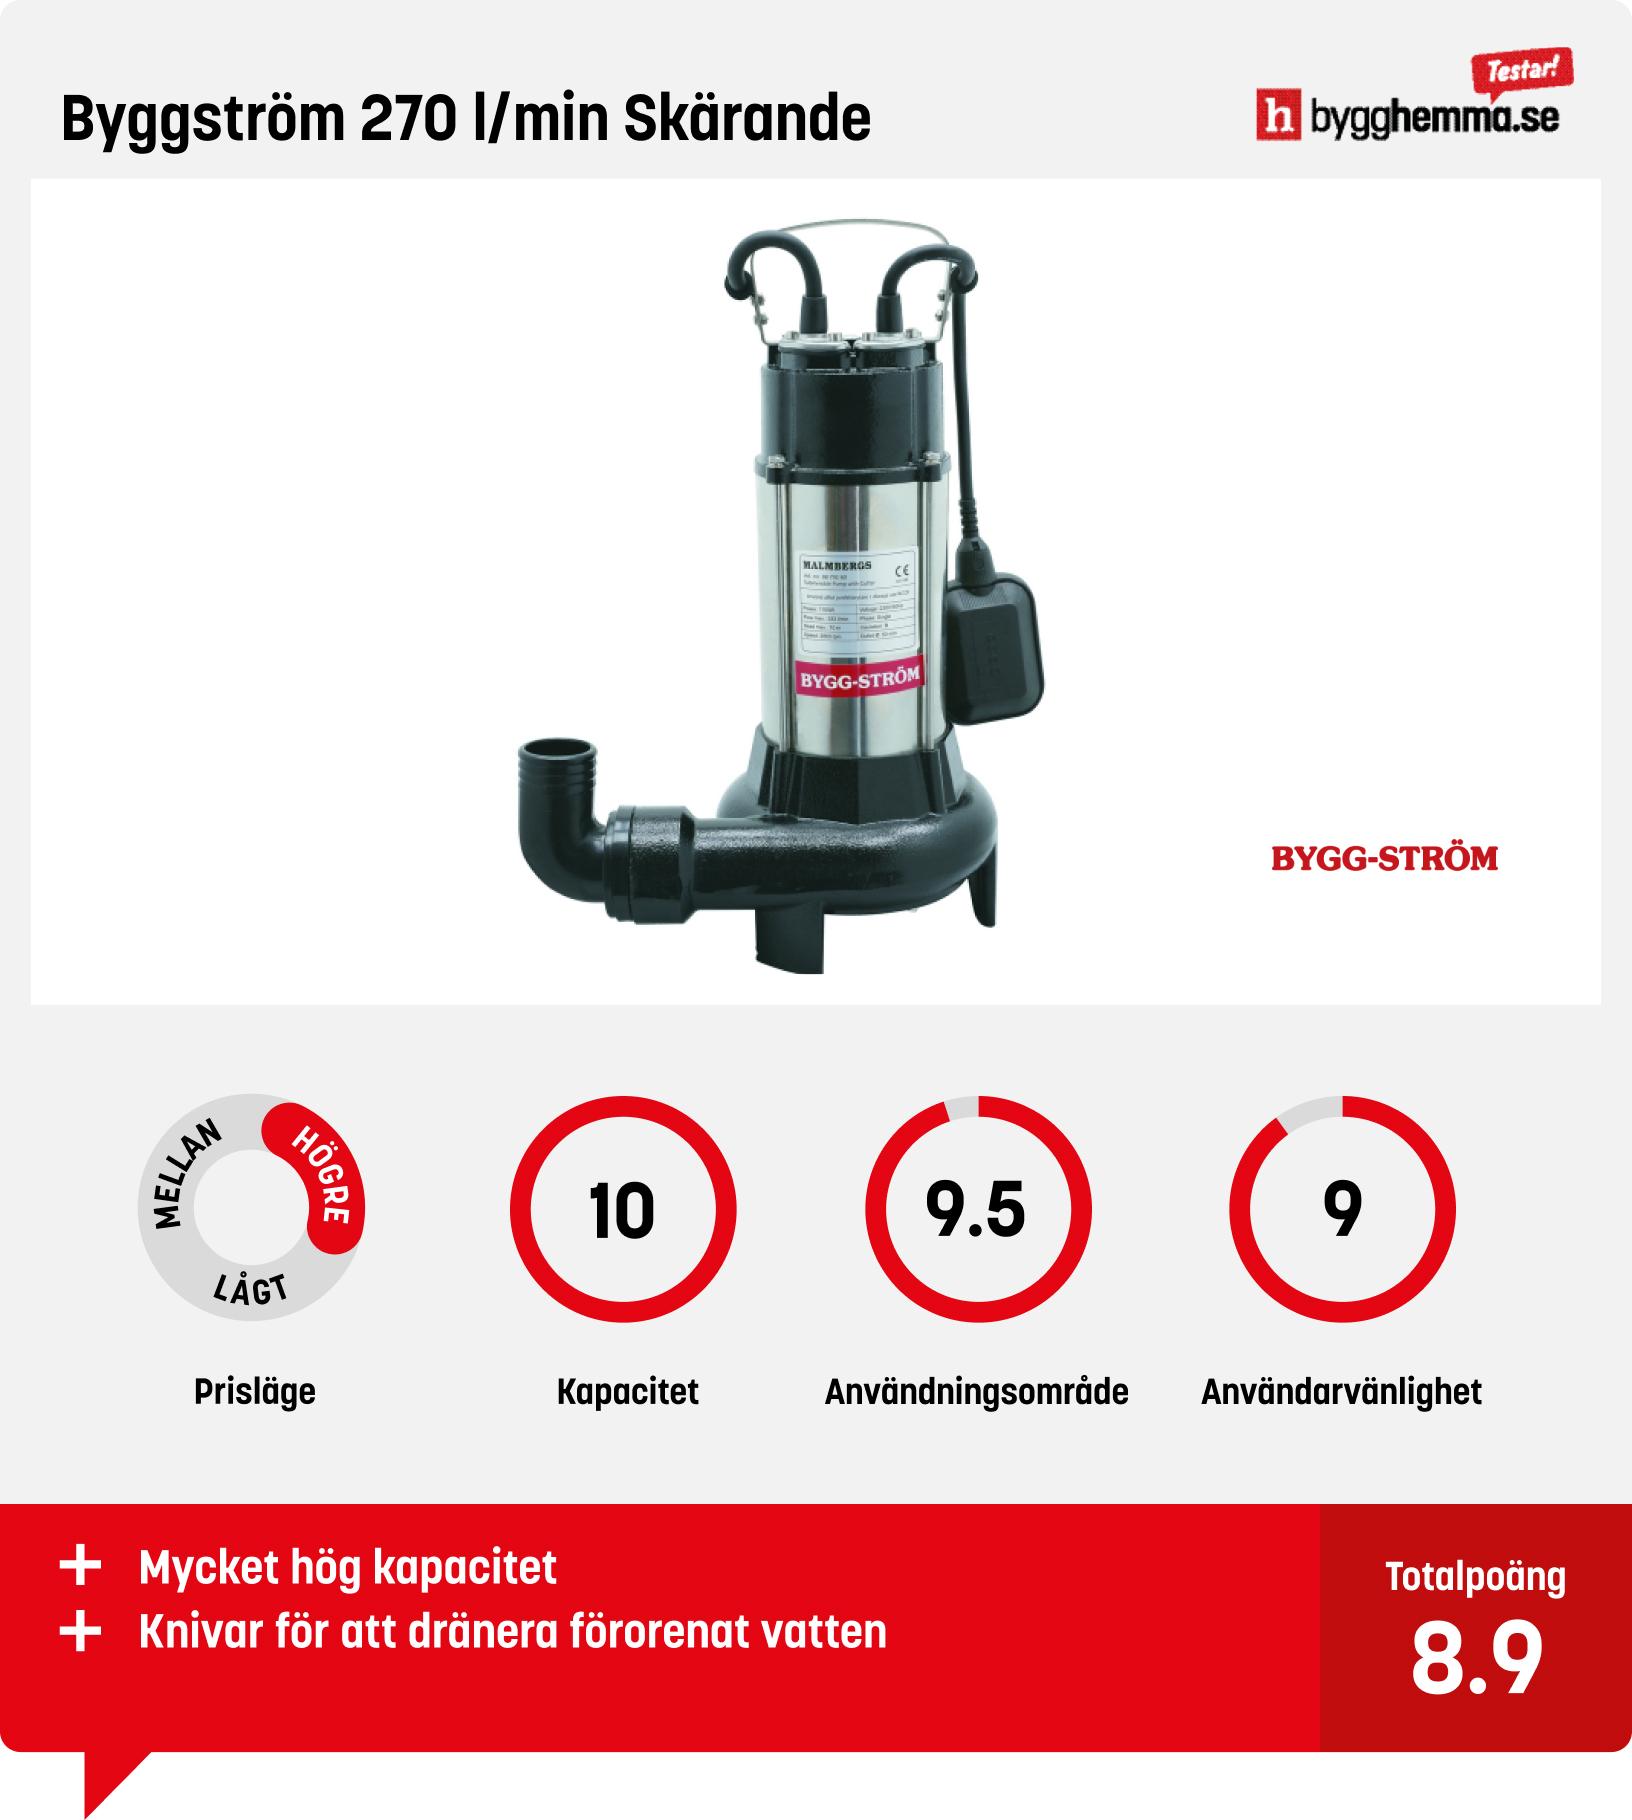 Dränkbar pump bäst i test - Byggström 270 l/min Skärande